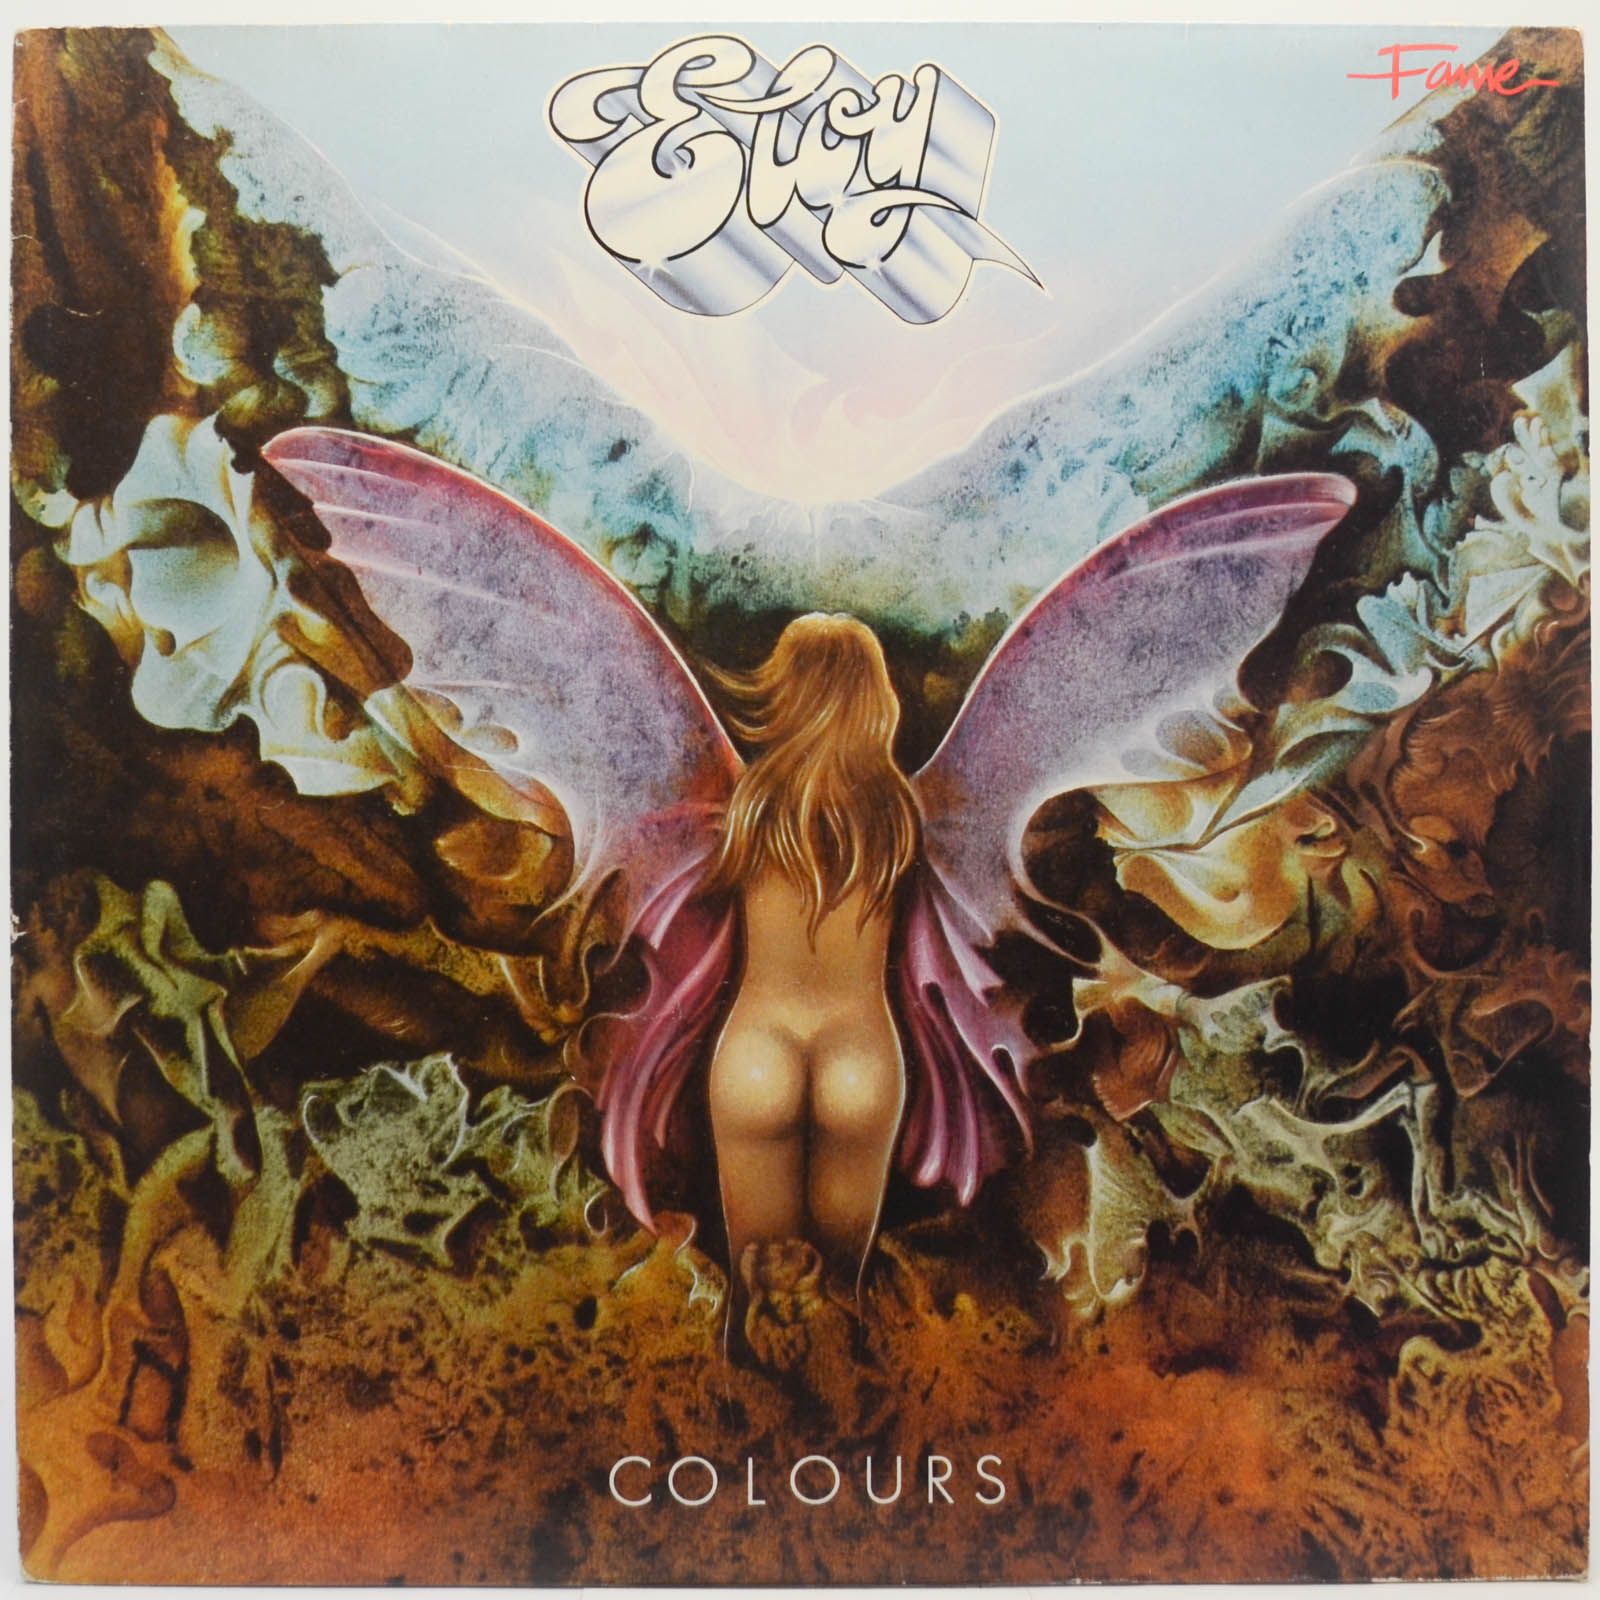 Eloy — Colours, 1980